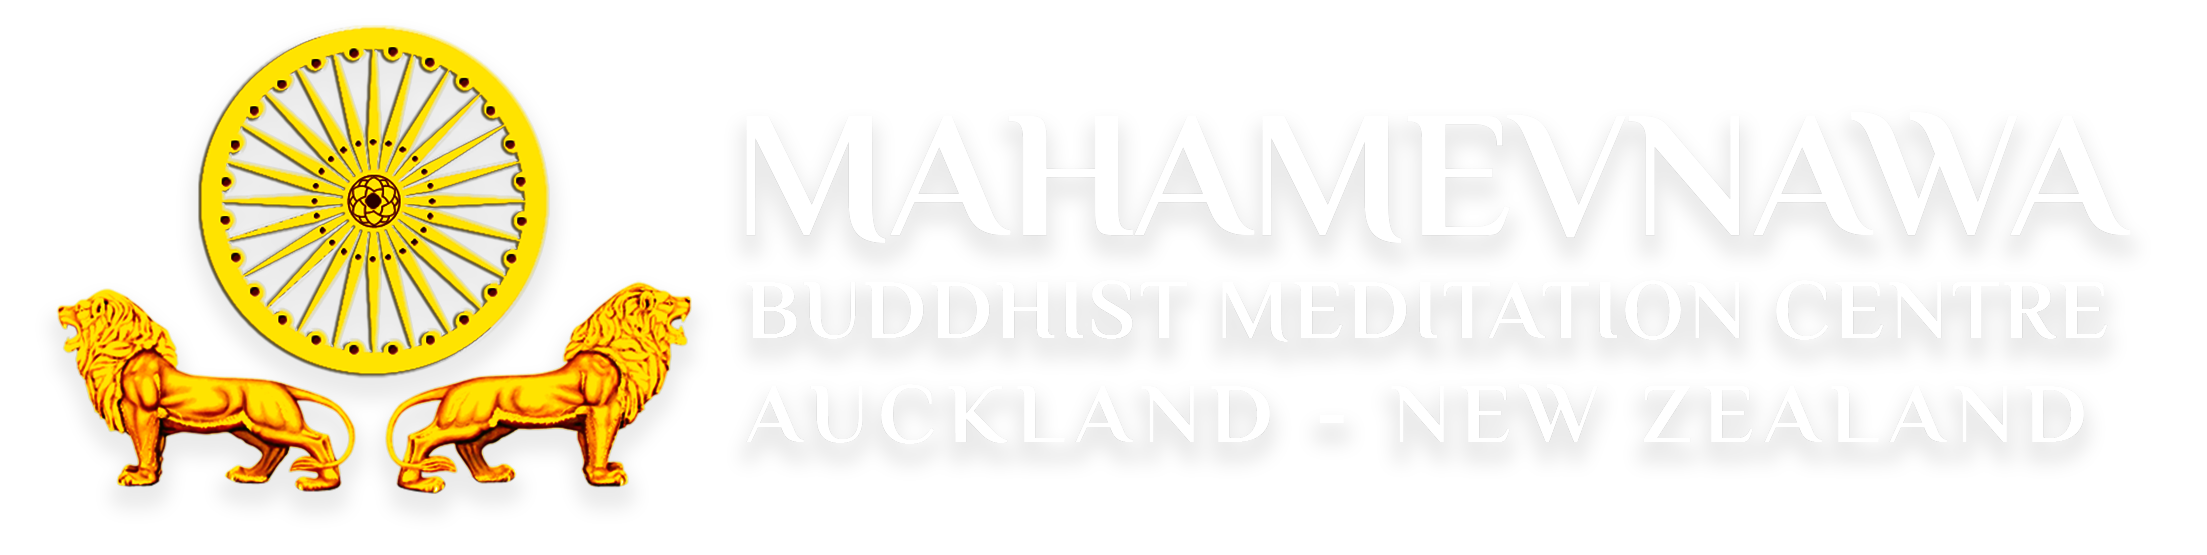 Mahamevnawa Buddhist Monastery Auckland